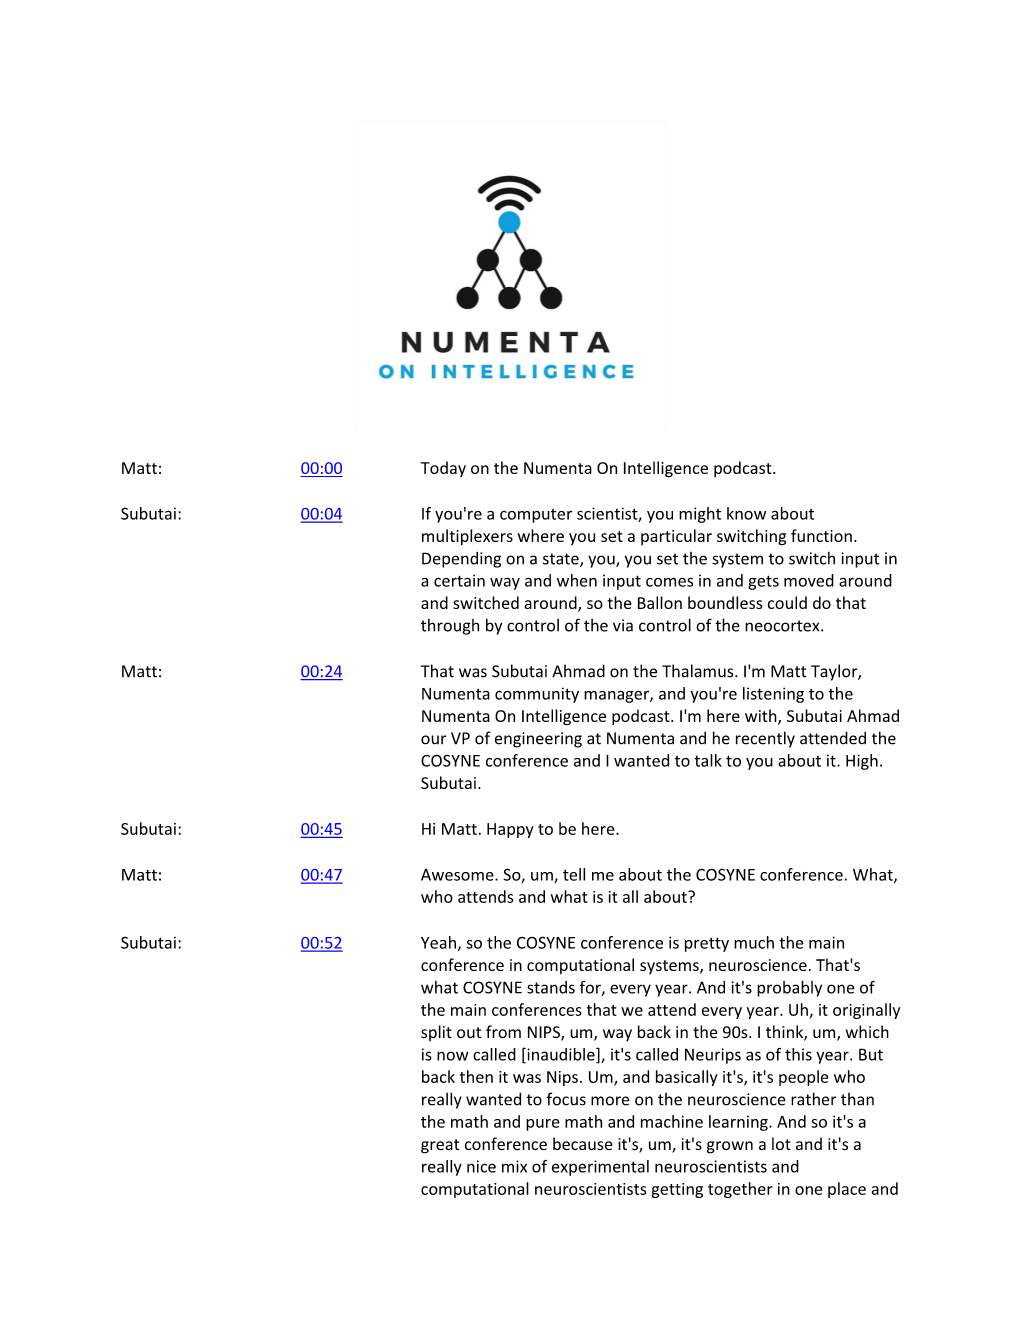 Matt: 00:00 Today on the Numenta on Intelligence Podcast. Subutai: 00:04